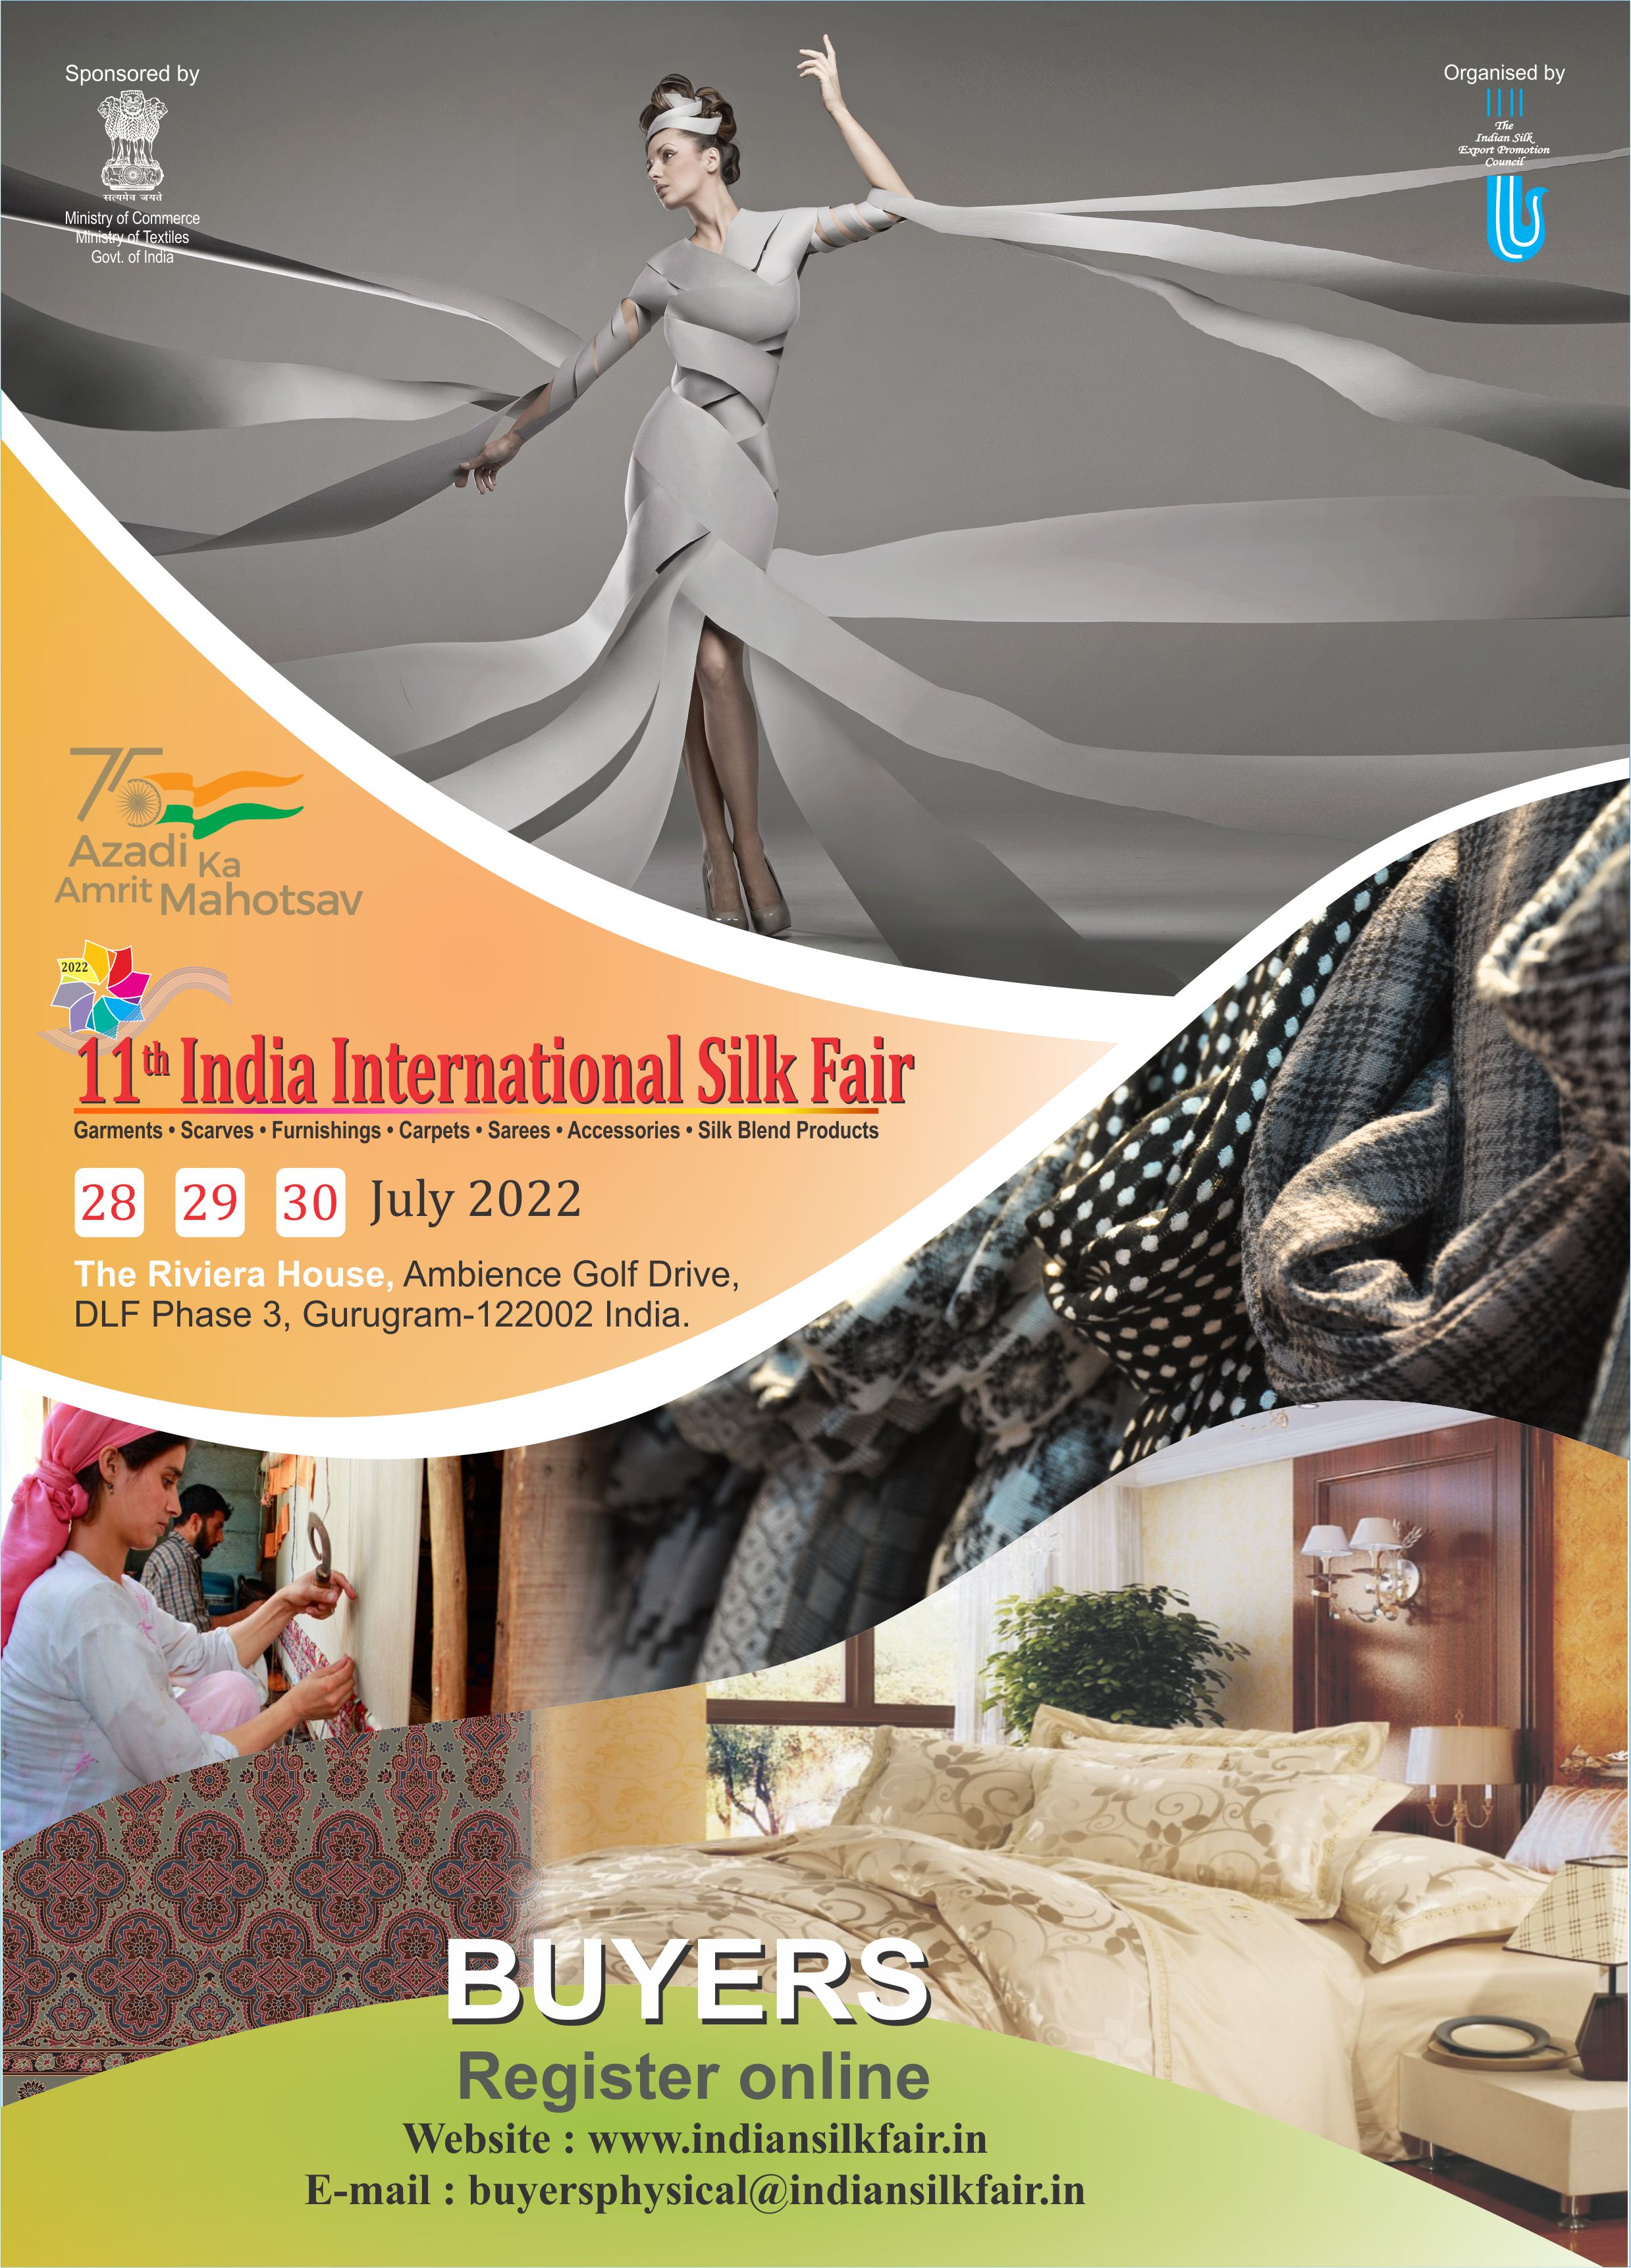   11th India International Silk Fair 28th - 30th July 2022